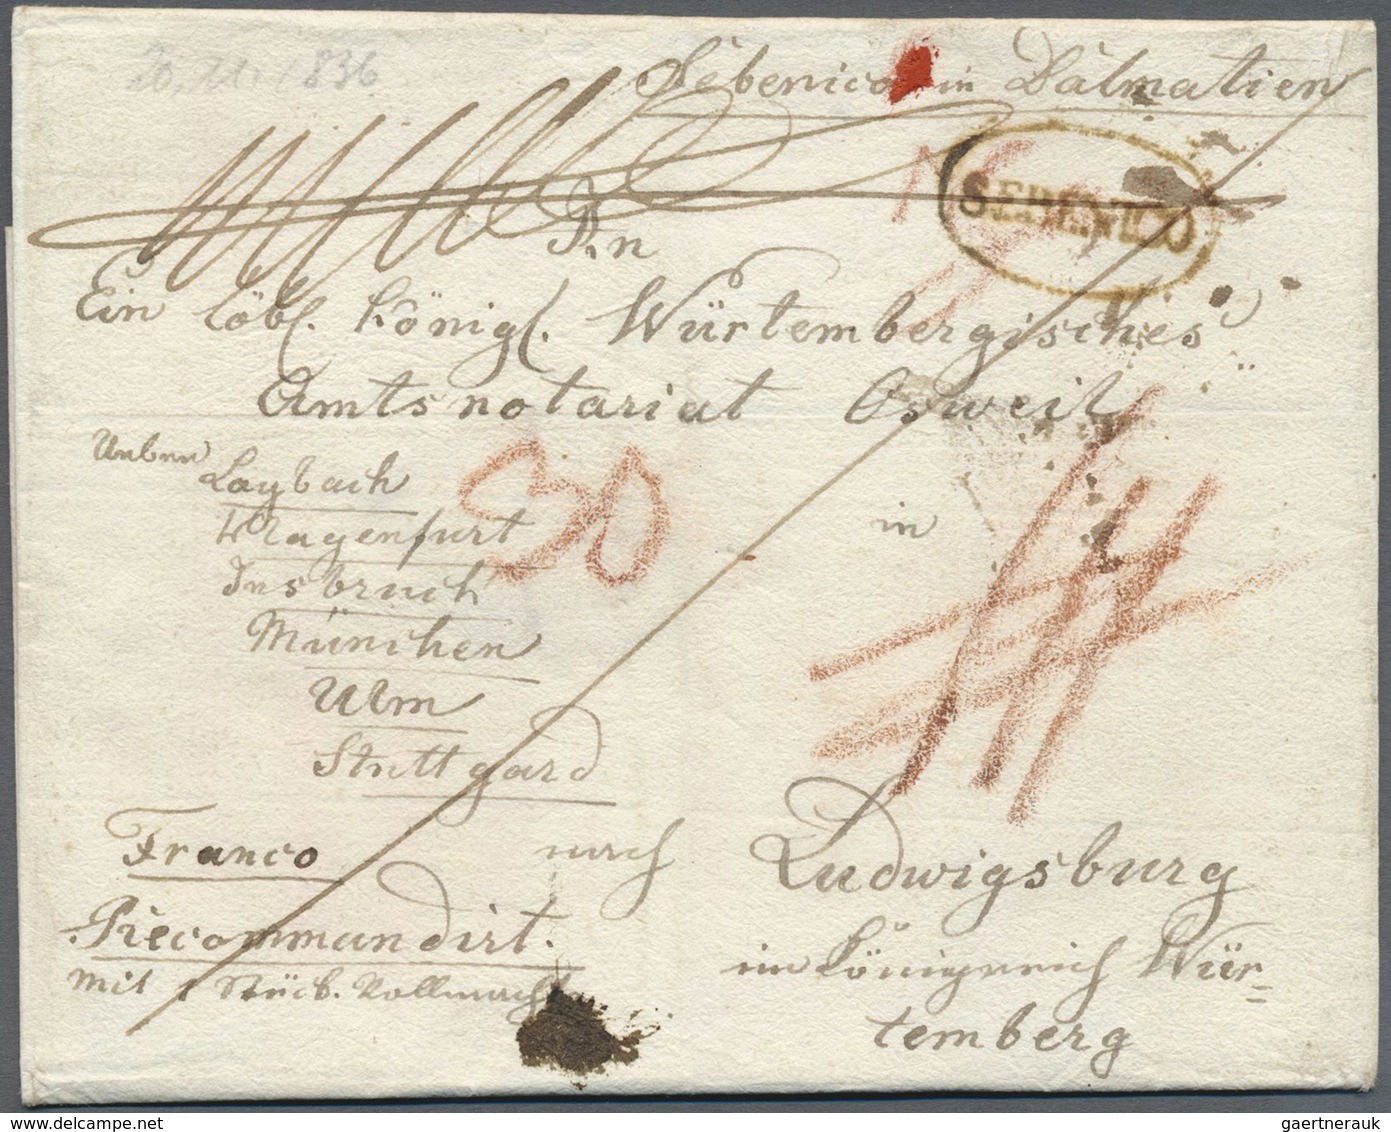 Br Österreich - Vorphilatelie: 1800/1860 (ca.), interessante Partie von über 60 Faltbriefen aus verschi